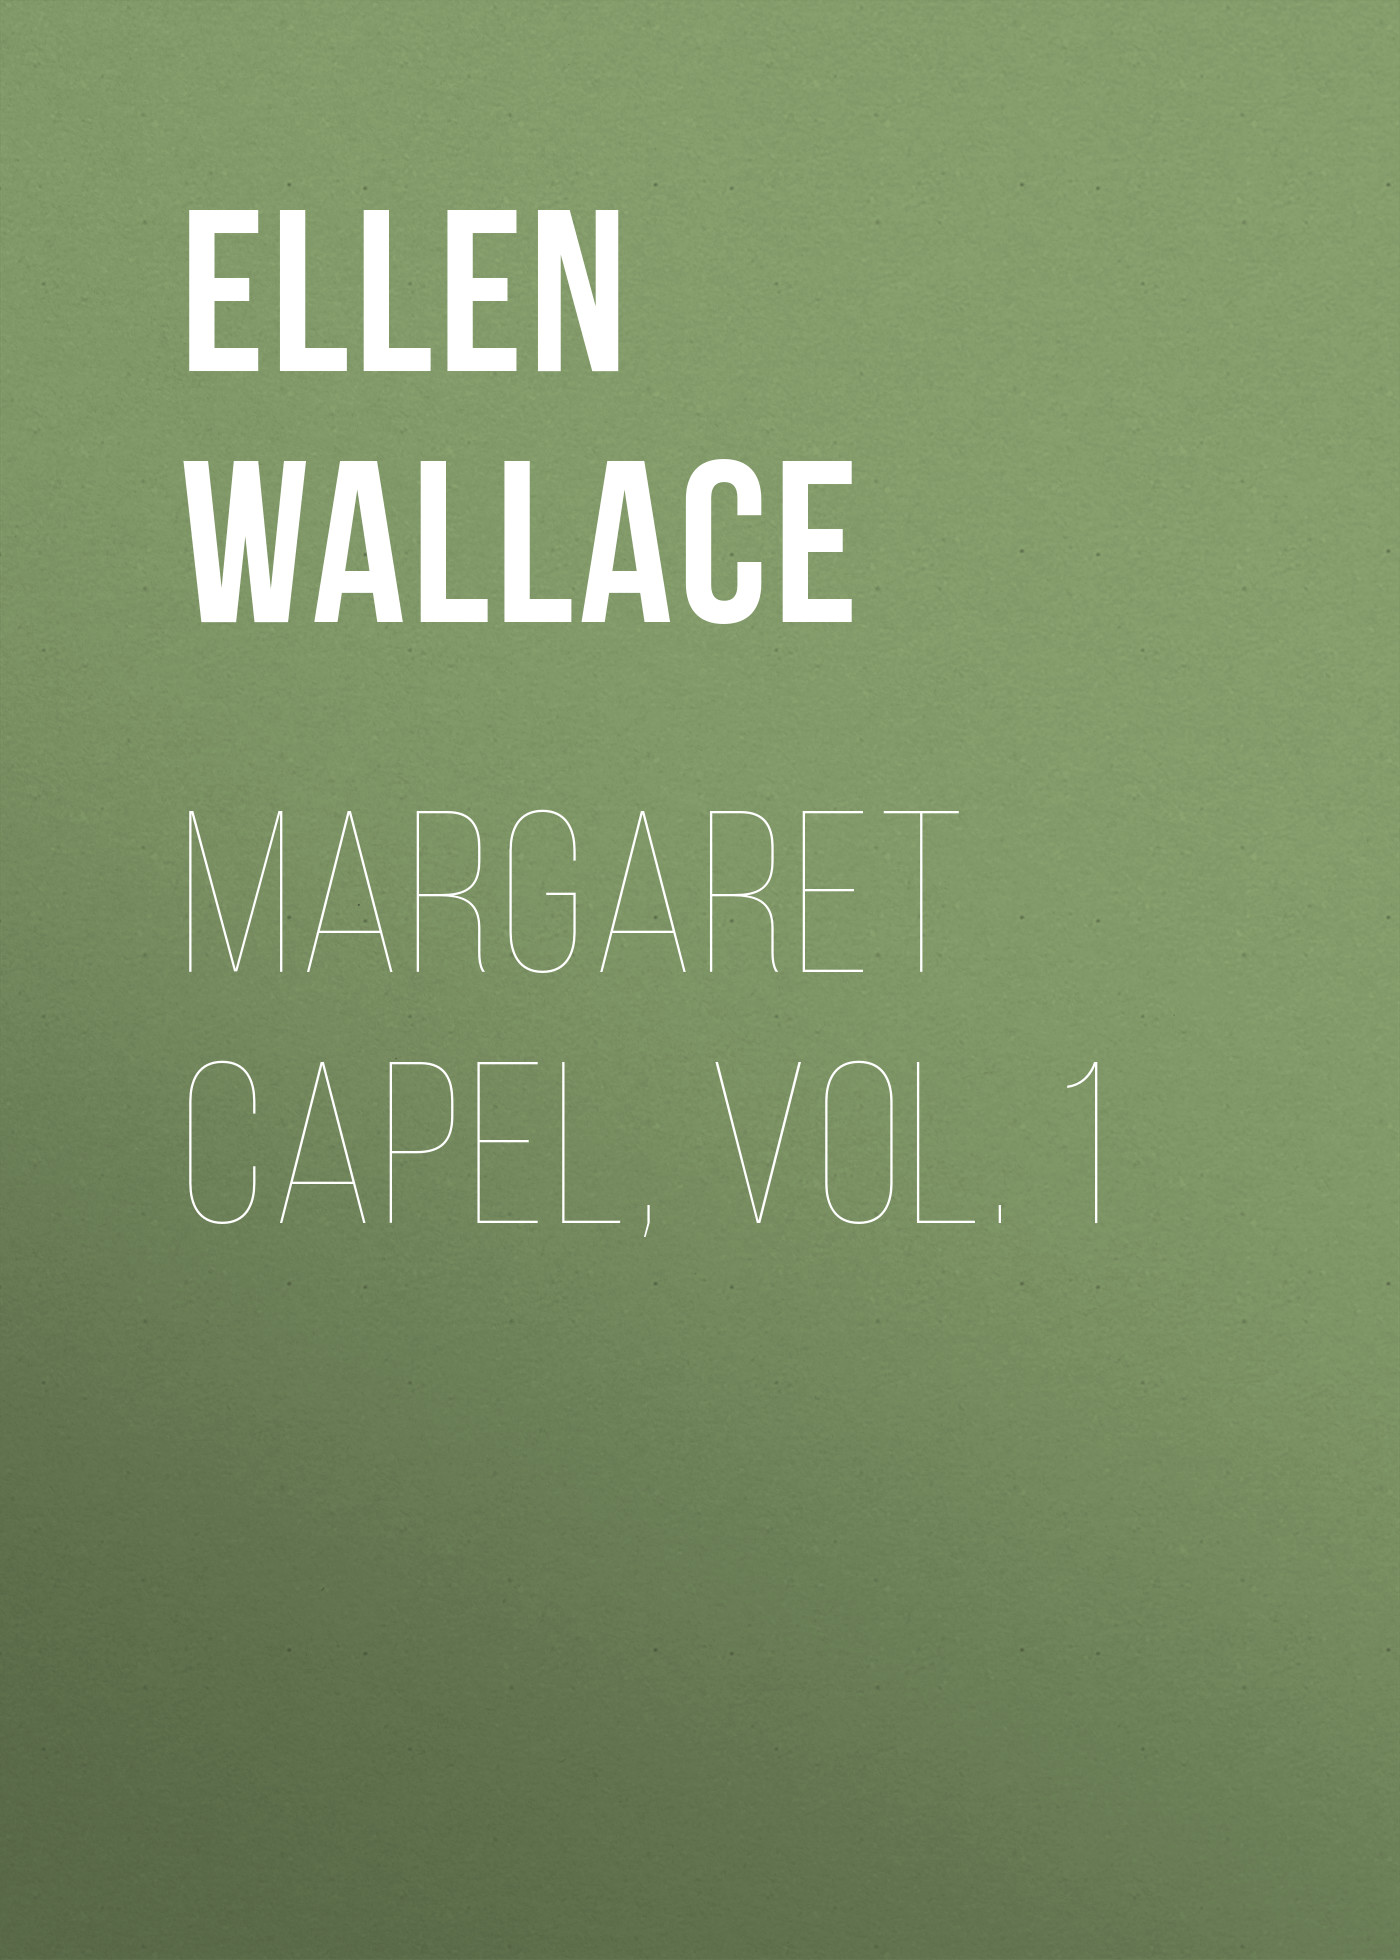 Книга Margaret Capel, vol. 1 из серии , созданная Ellen Wallace, может относится к жанру Зарубежная классика, Литература 19 века, Зарубежная старинная литература. Стоимость электронной книги Margaret Capel, vol. 1 с идентификатором 34282584 составляет 0 руб.